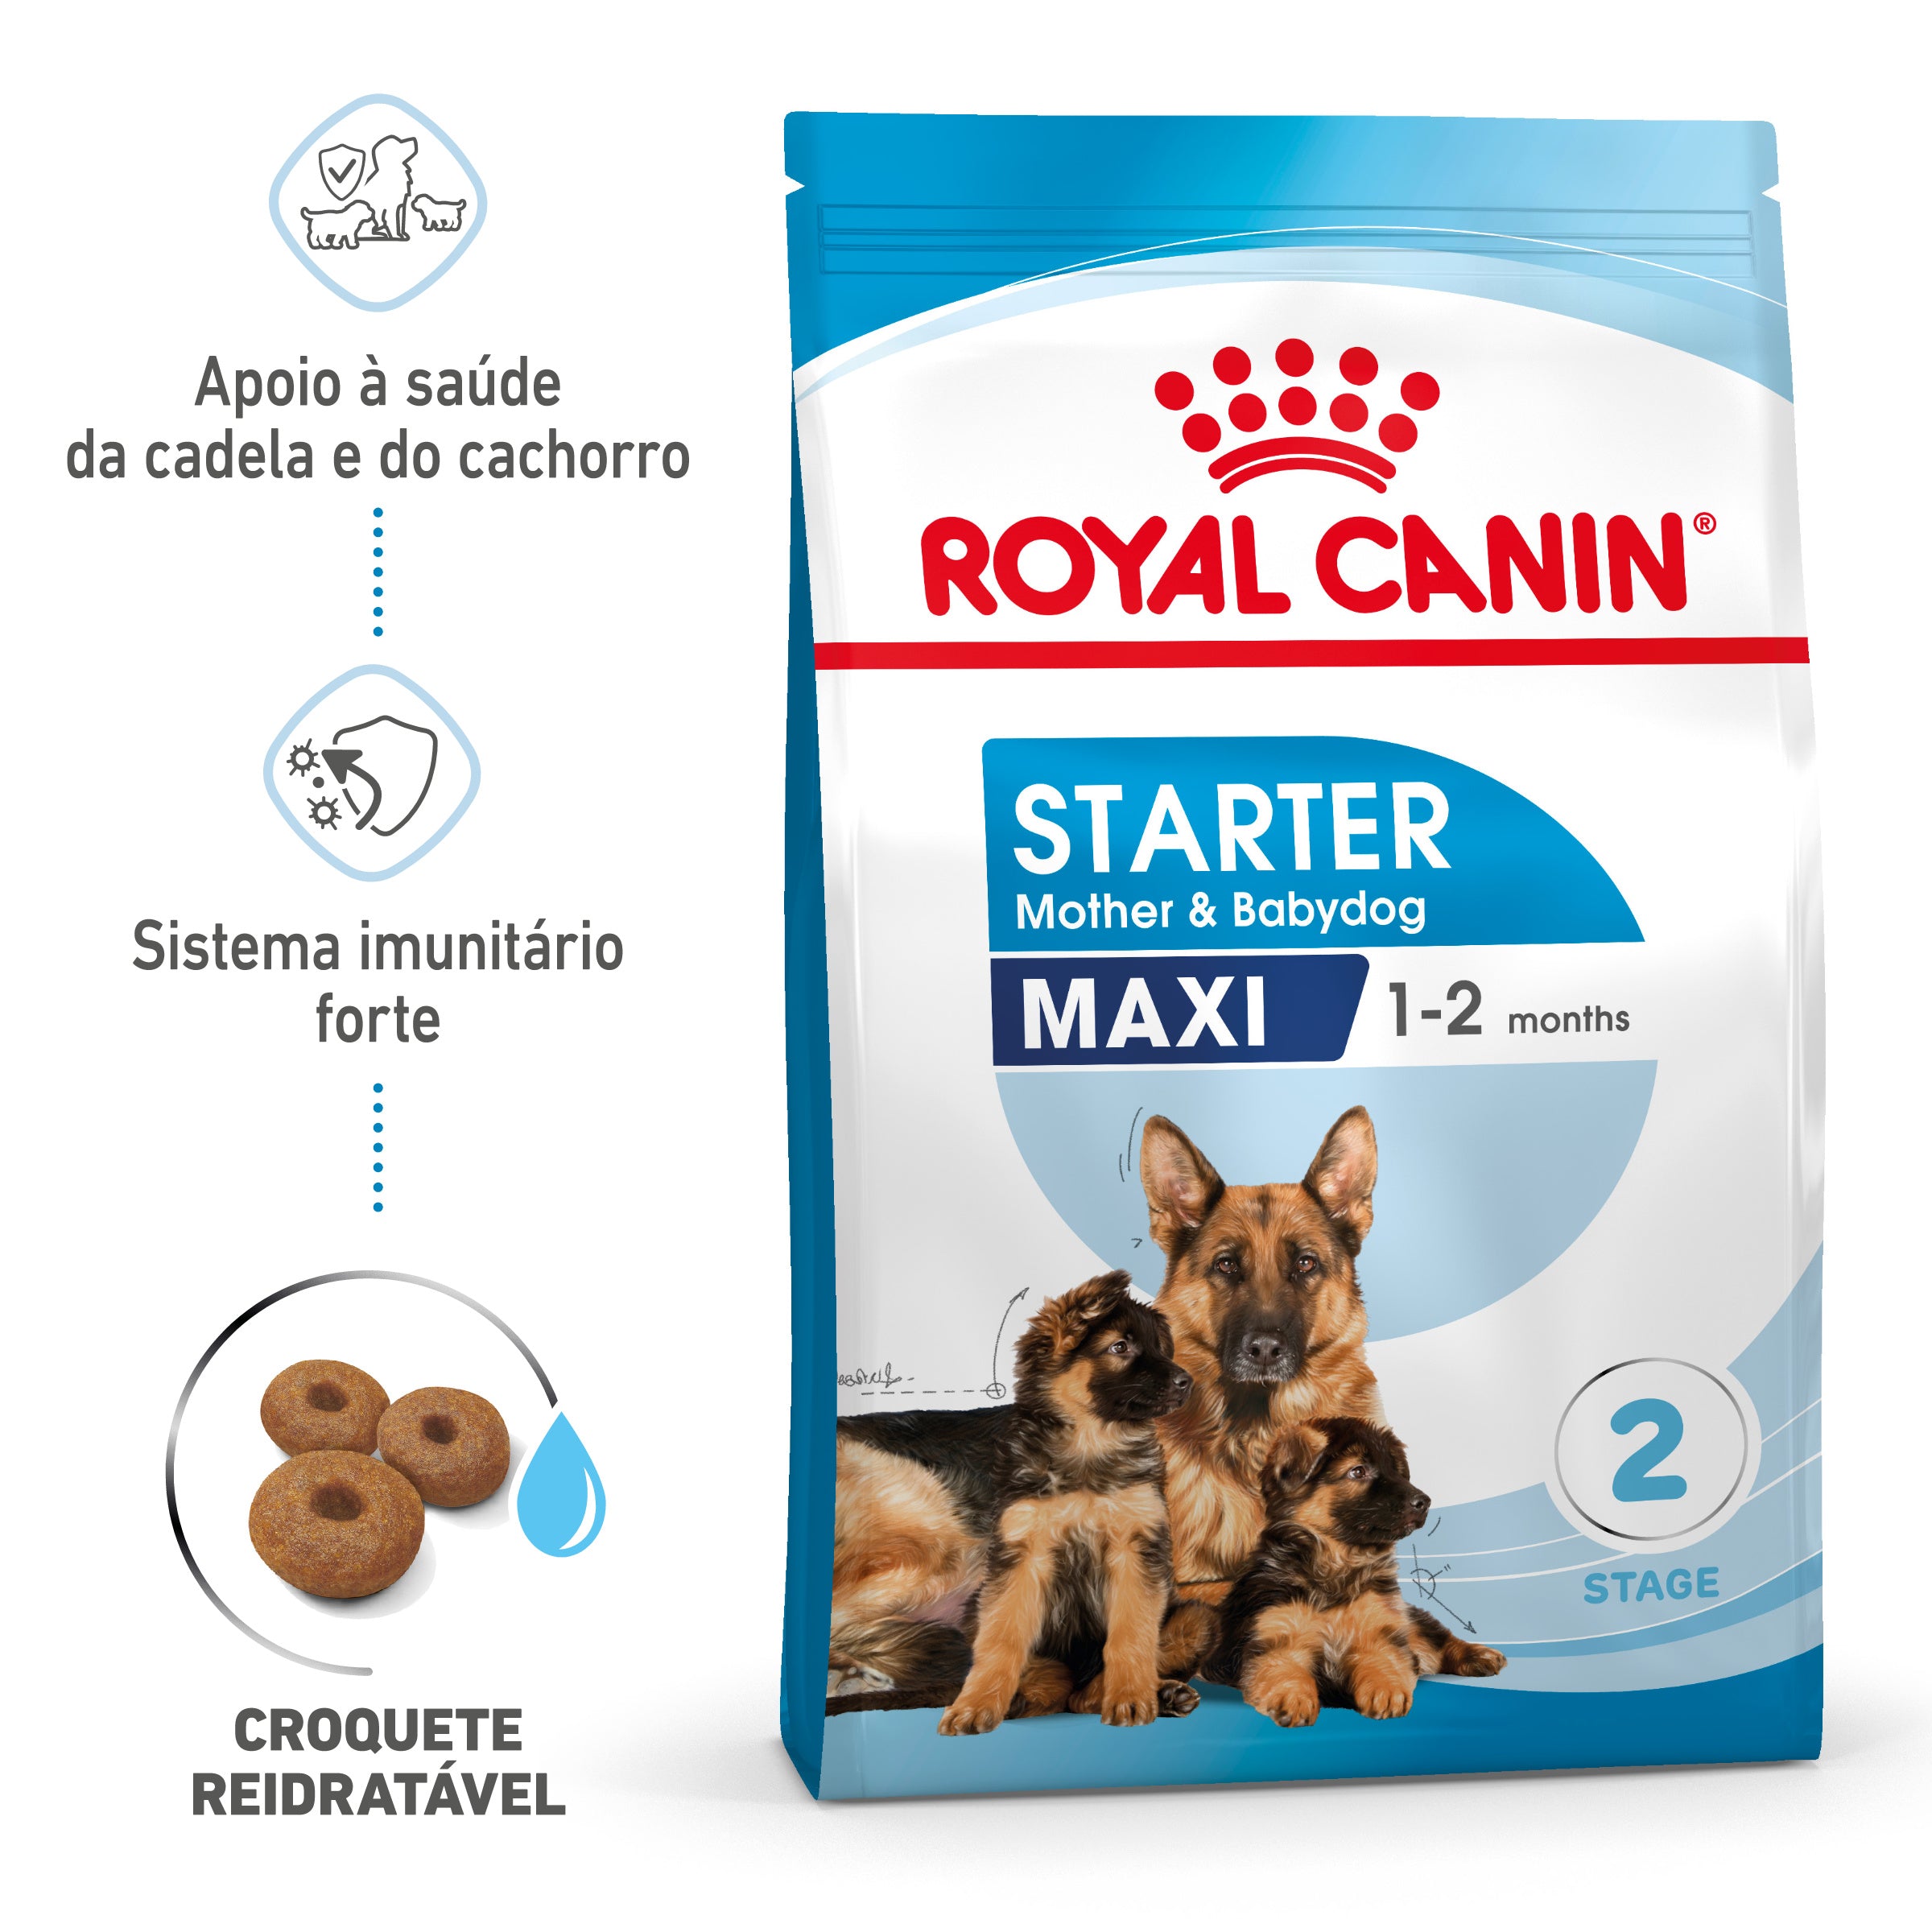 Royal Canin Starter Mother & Babydog Maxi - Ração seca para cadelas gestantes/lactantes e cachorros de porte grande até aos 2 meses